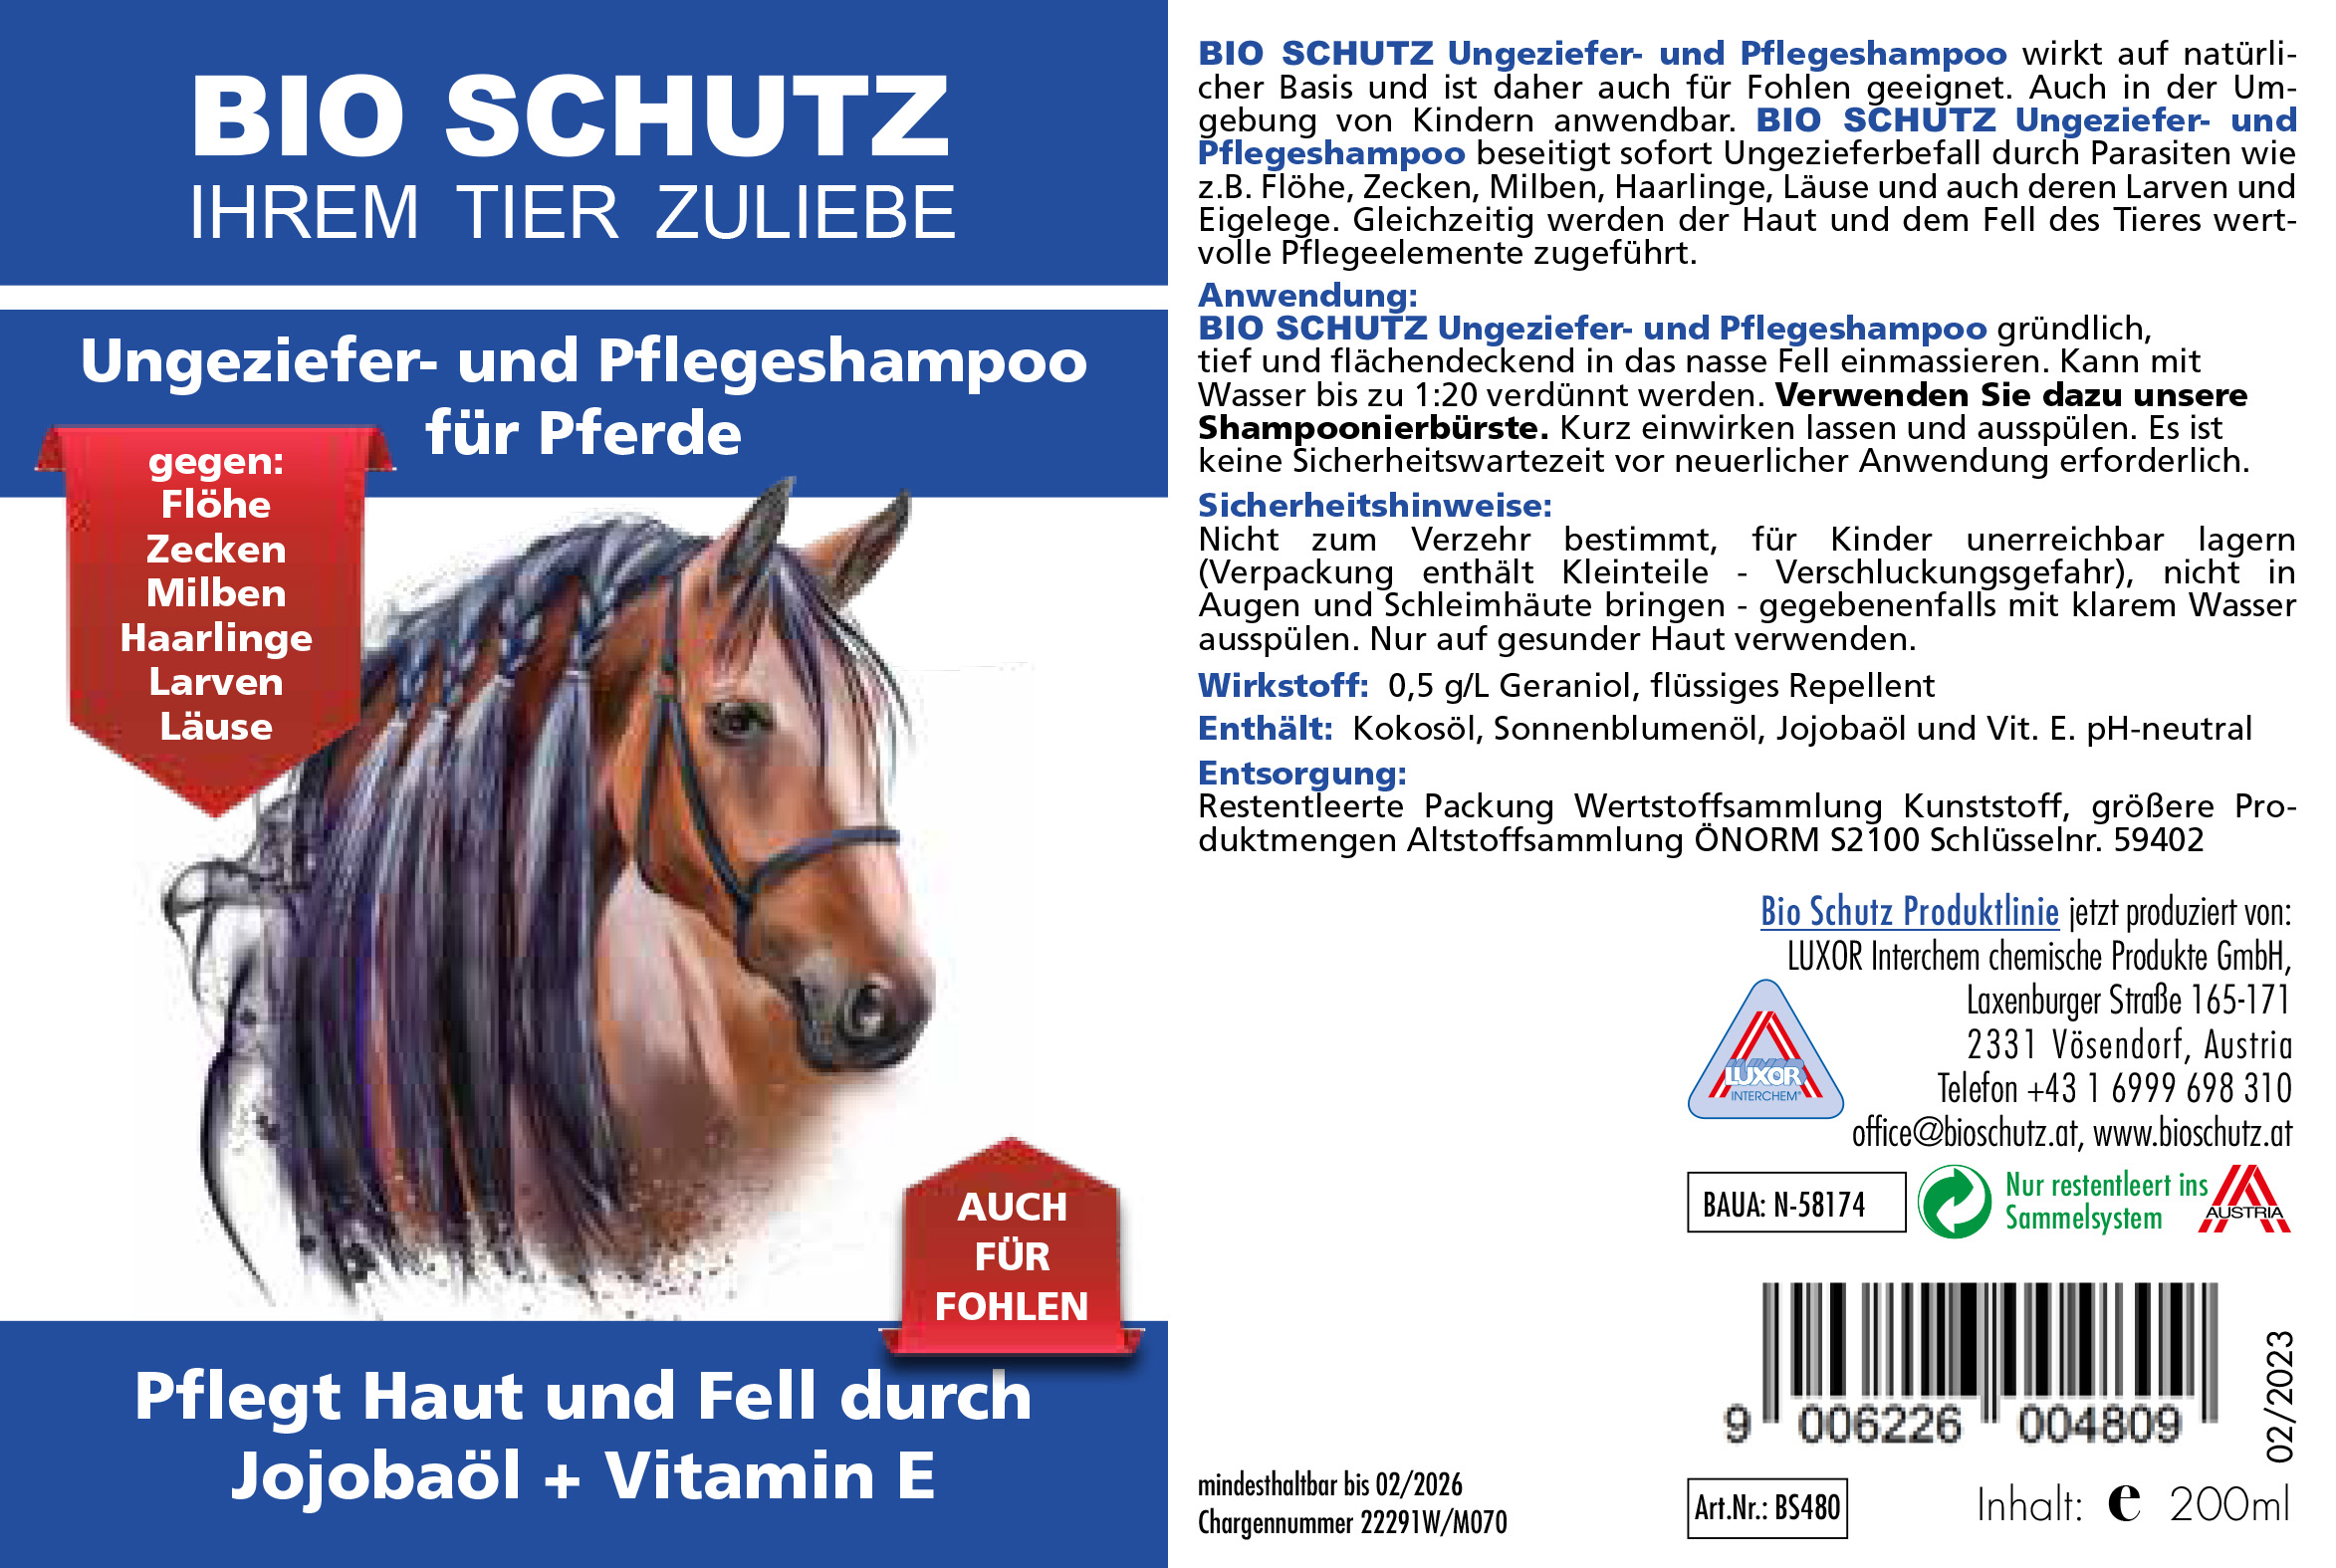 BIO SCHUTZ Ungeziefer- und Pflegeshampoo für Pferde